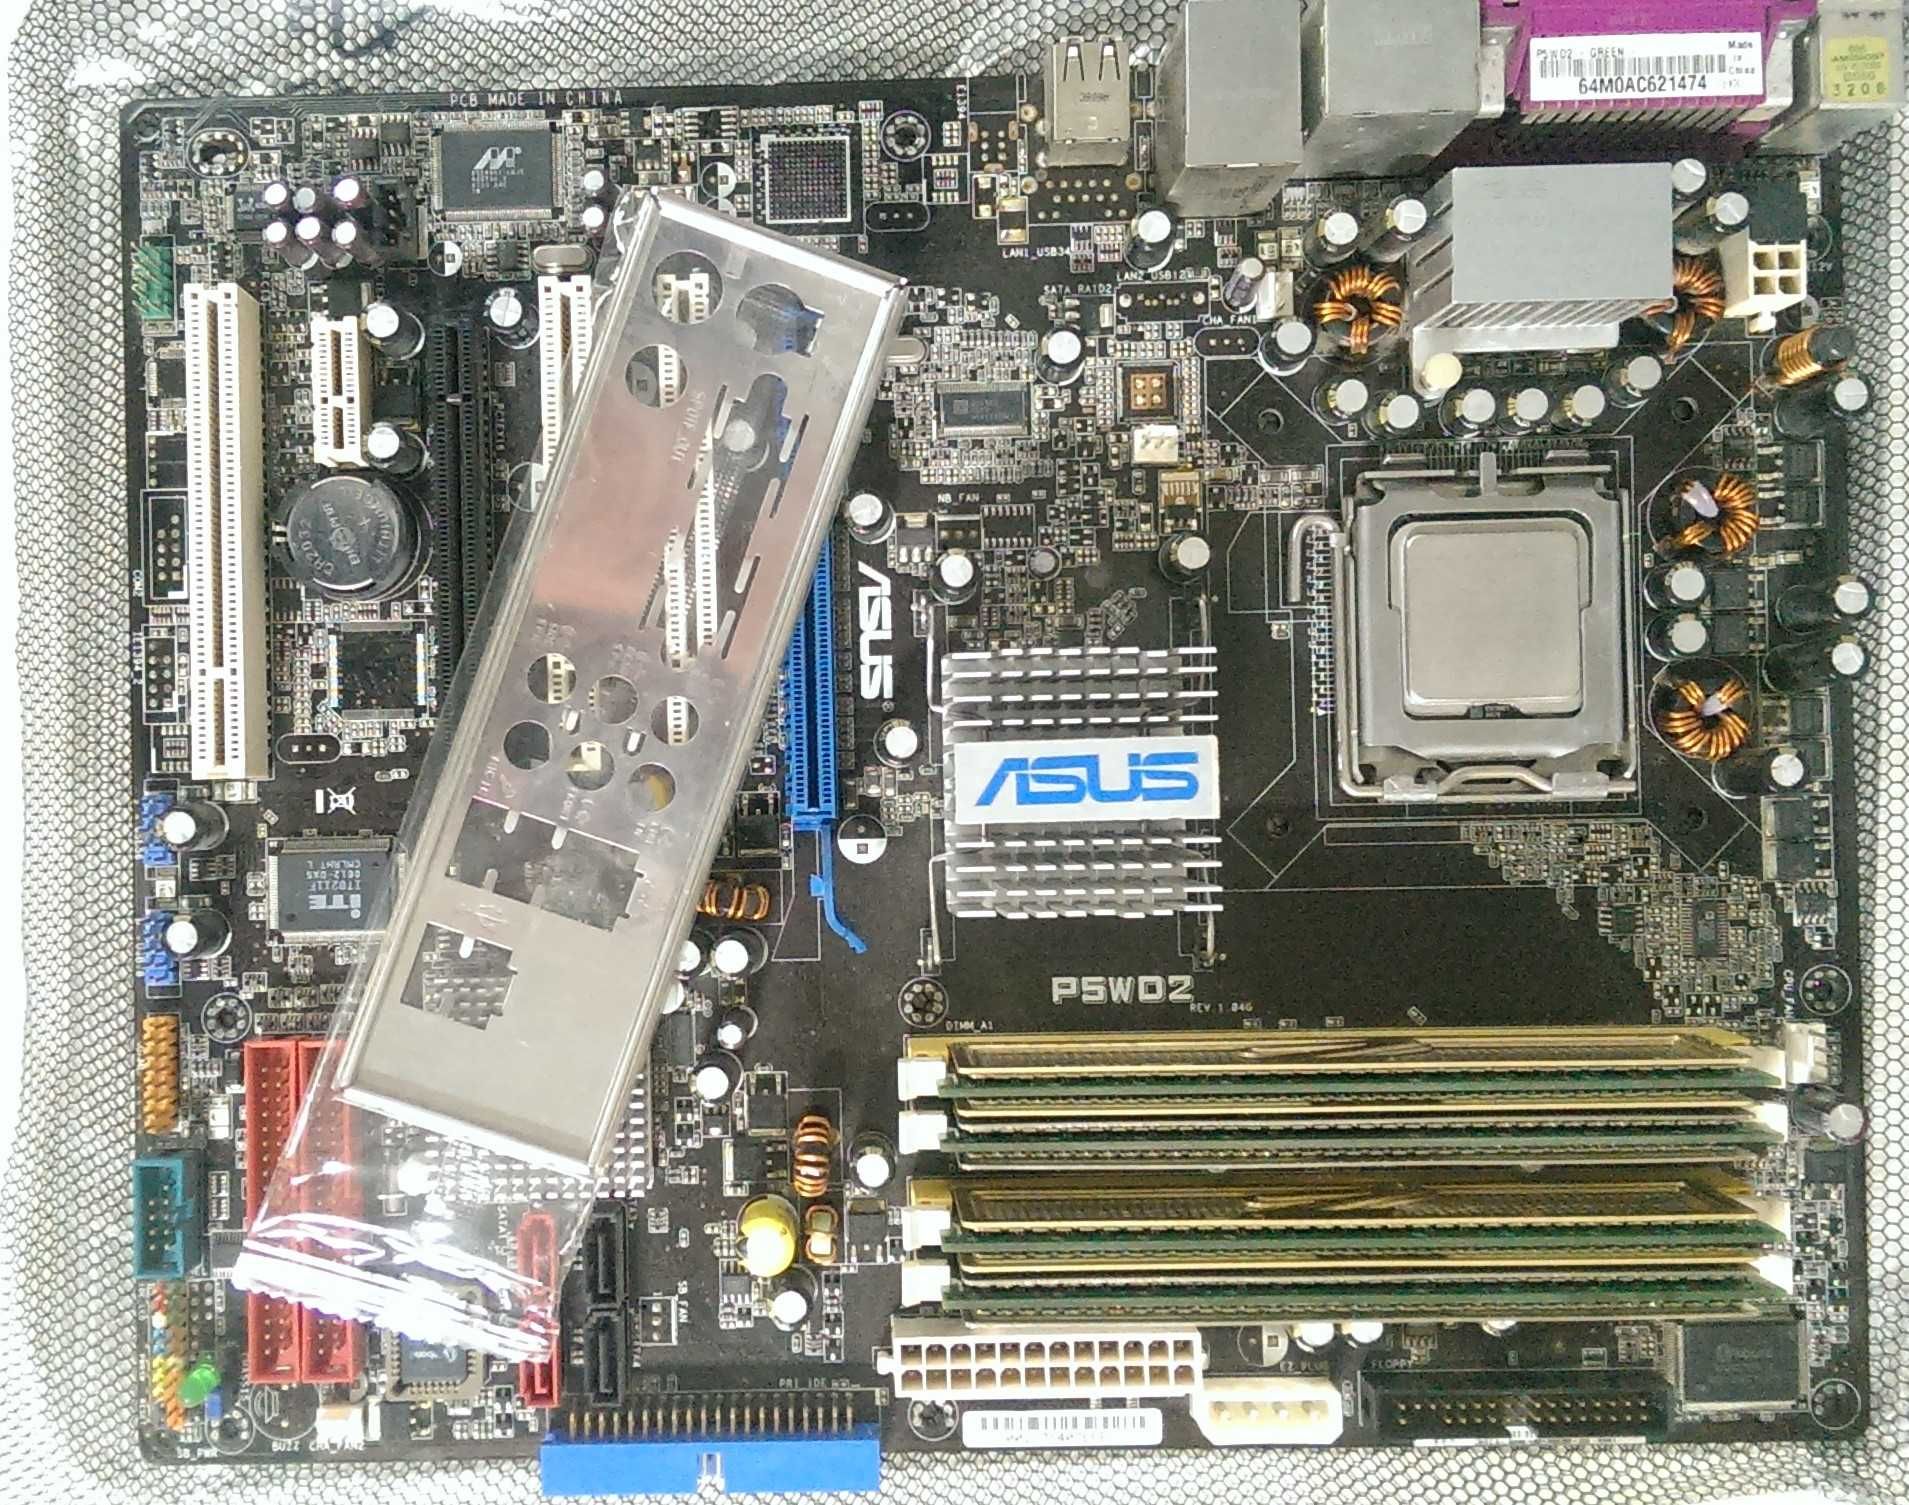 Комплект ASUS P5WD2 s775 + Процессор Pentium D 925 + DDR2 4Gb (1x4)